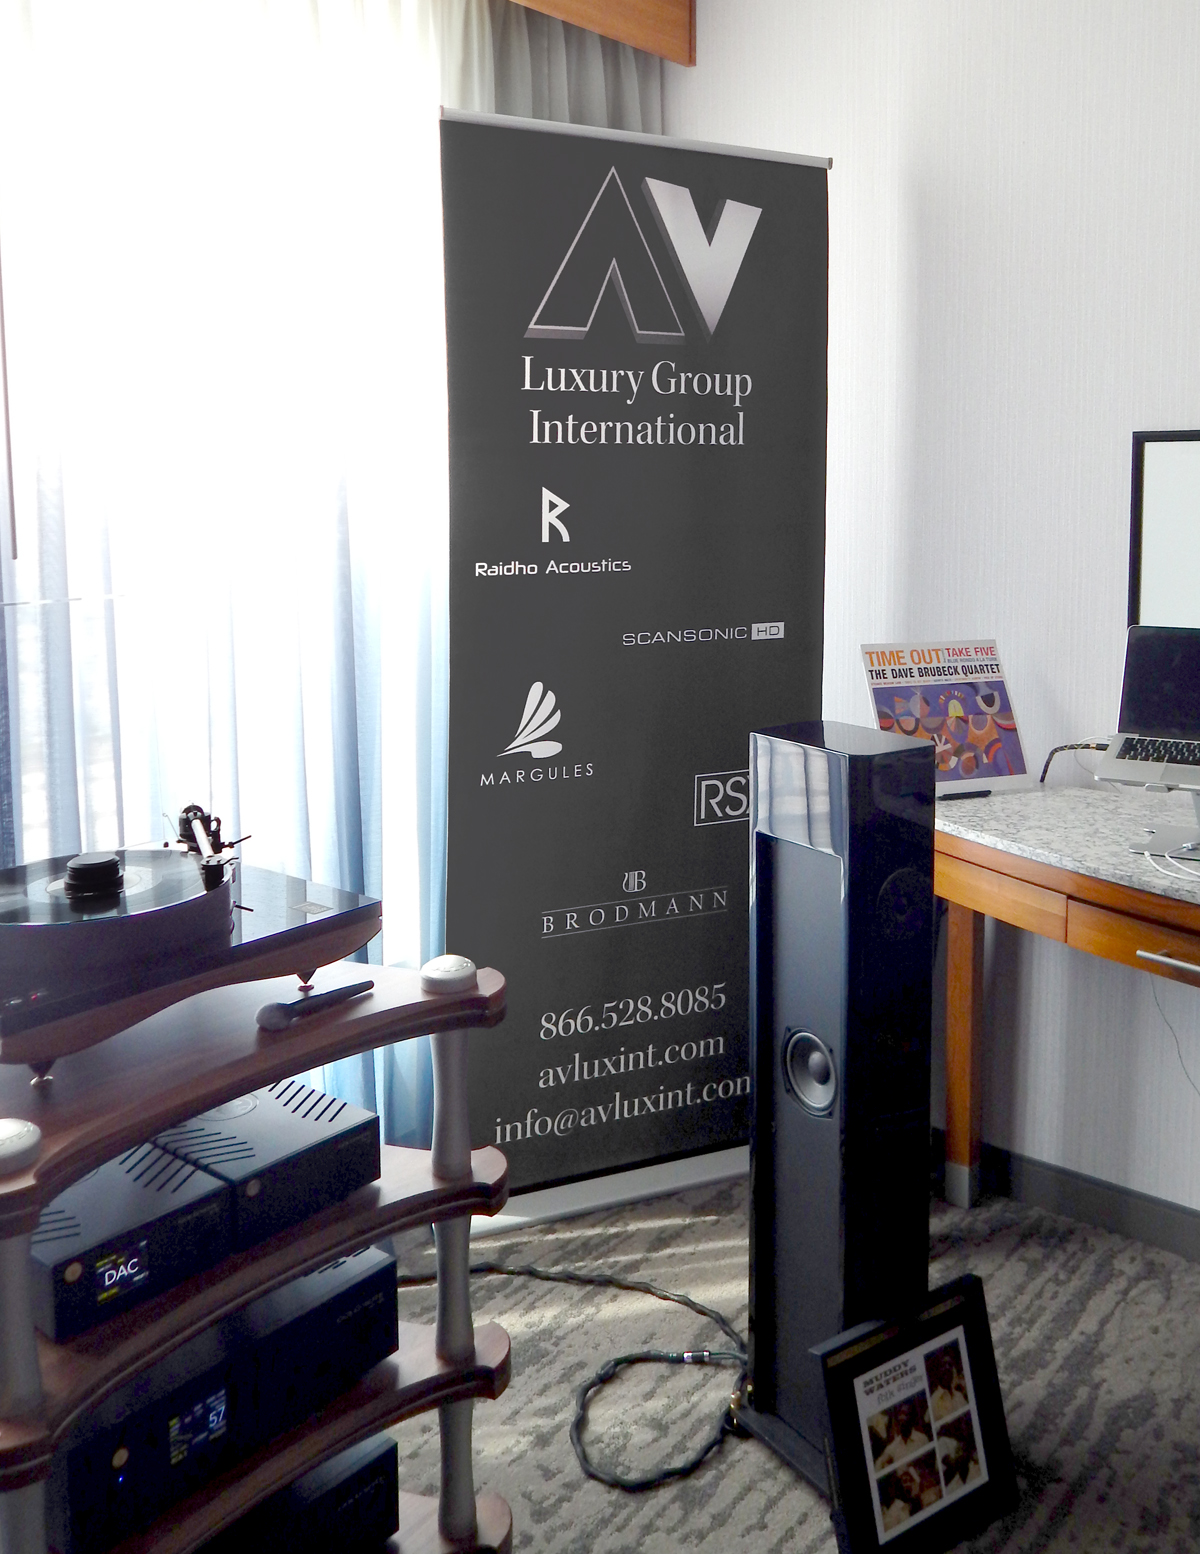 AV Luxury Group International